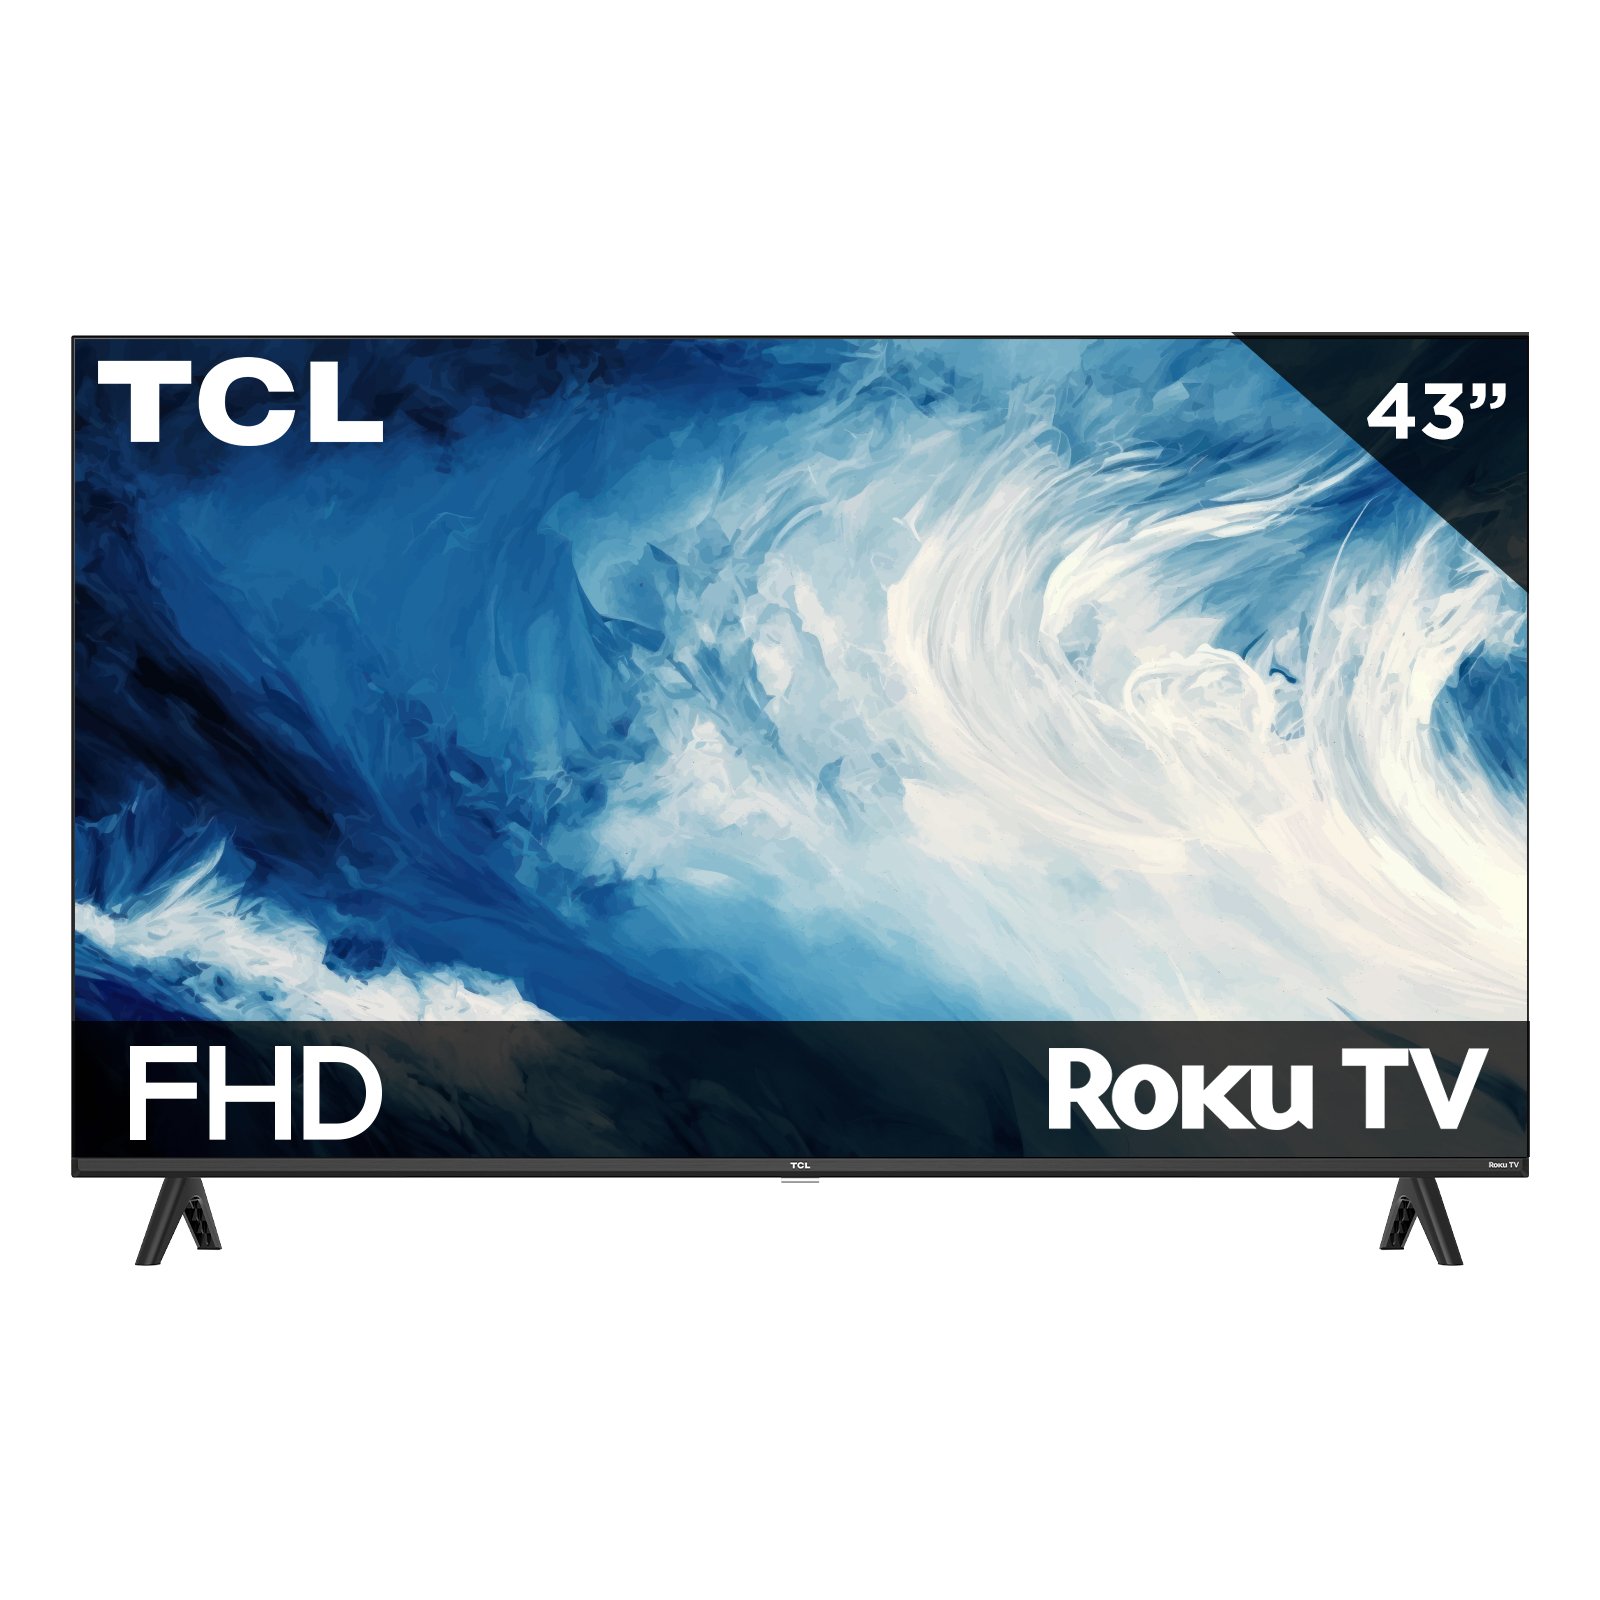 Pantalla LED Hisense 43 Ultra HD 4K Smart TV 43A60GV